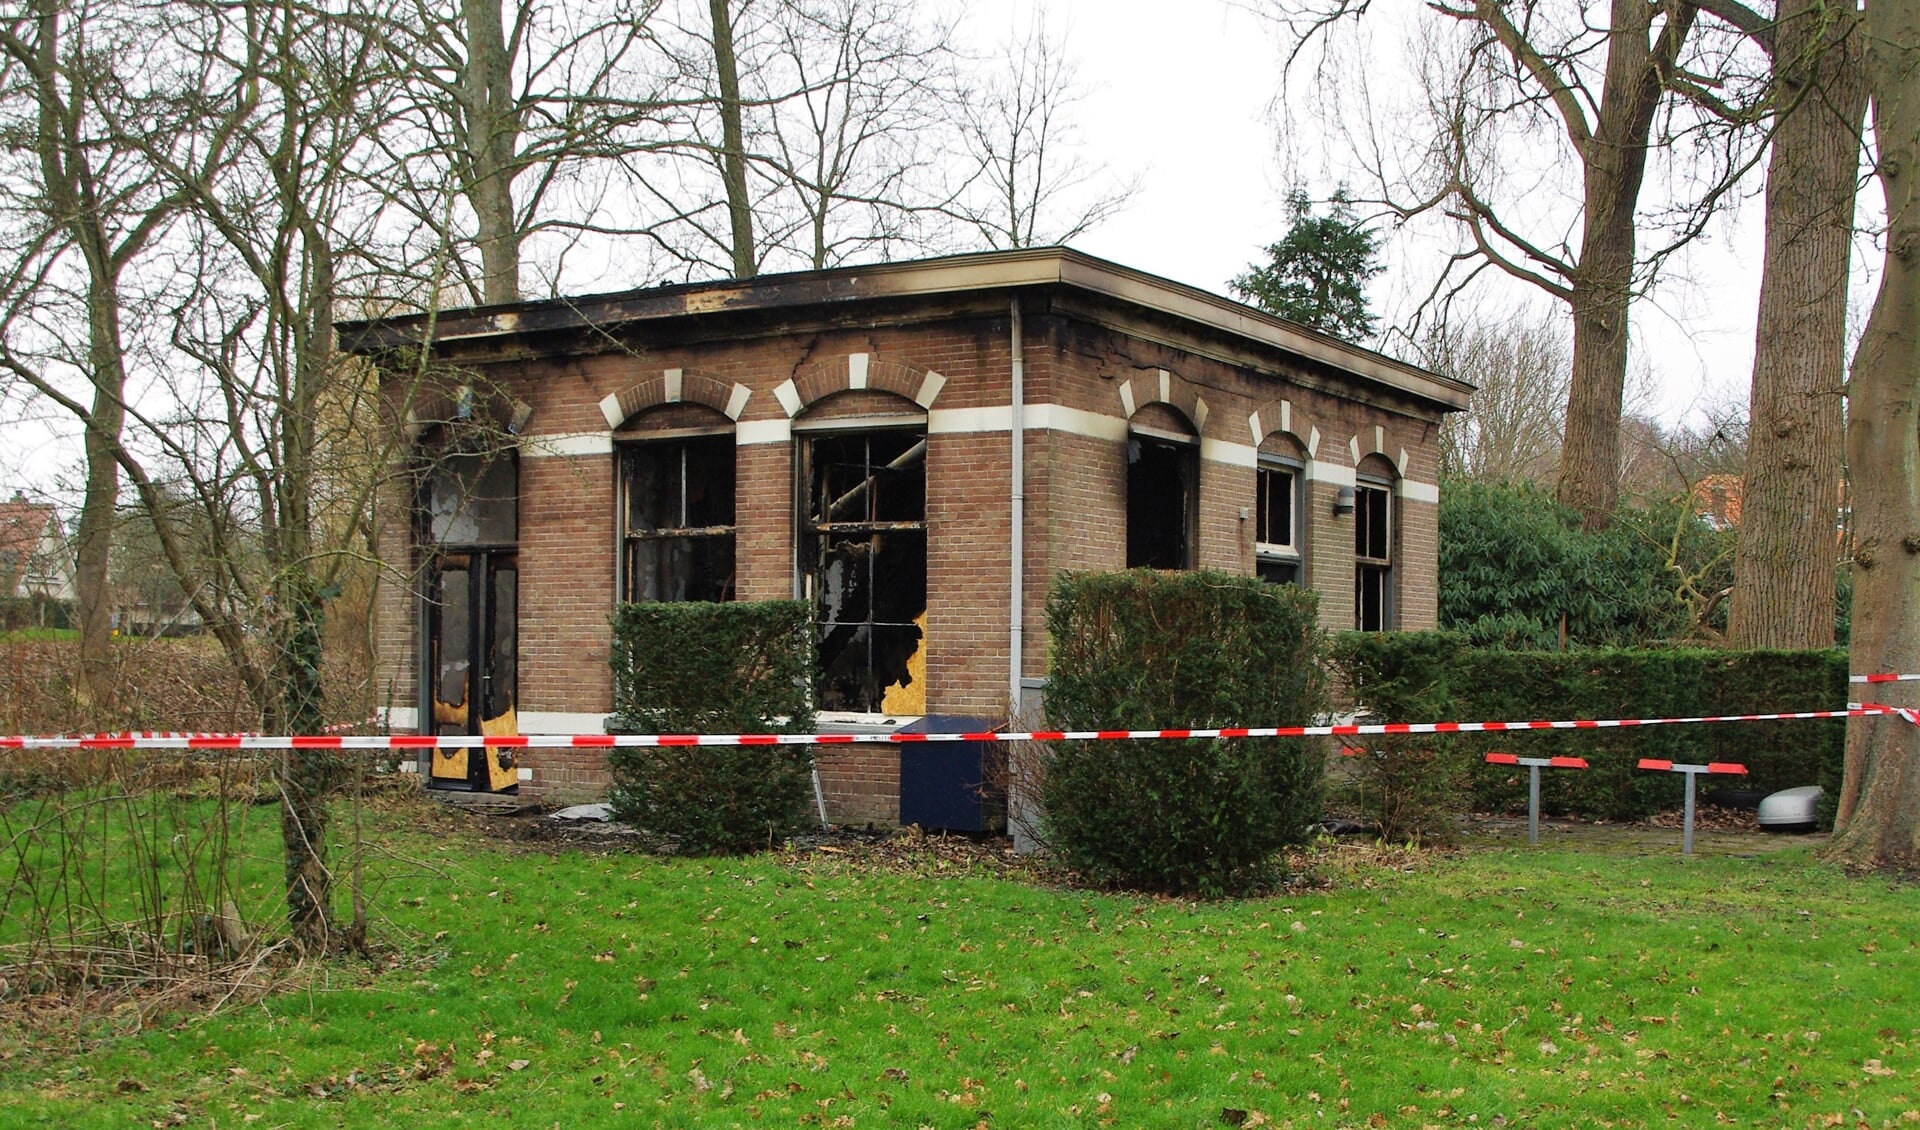 Het mortuariumgebouw aan de Kasteellaan is afgelopen week uitgebrand. Ook in november 2021 woedde er een brand in het huisje, dat toen anti-kraak werd bewoond. | Foto Willemien Timmers